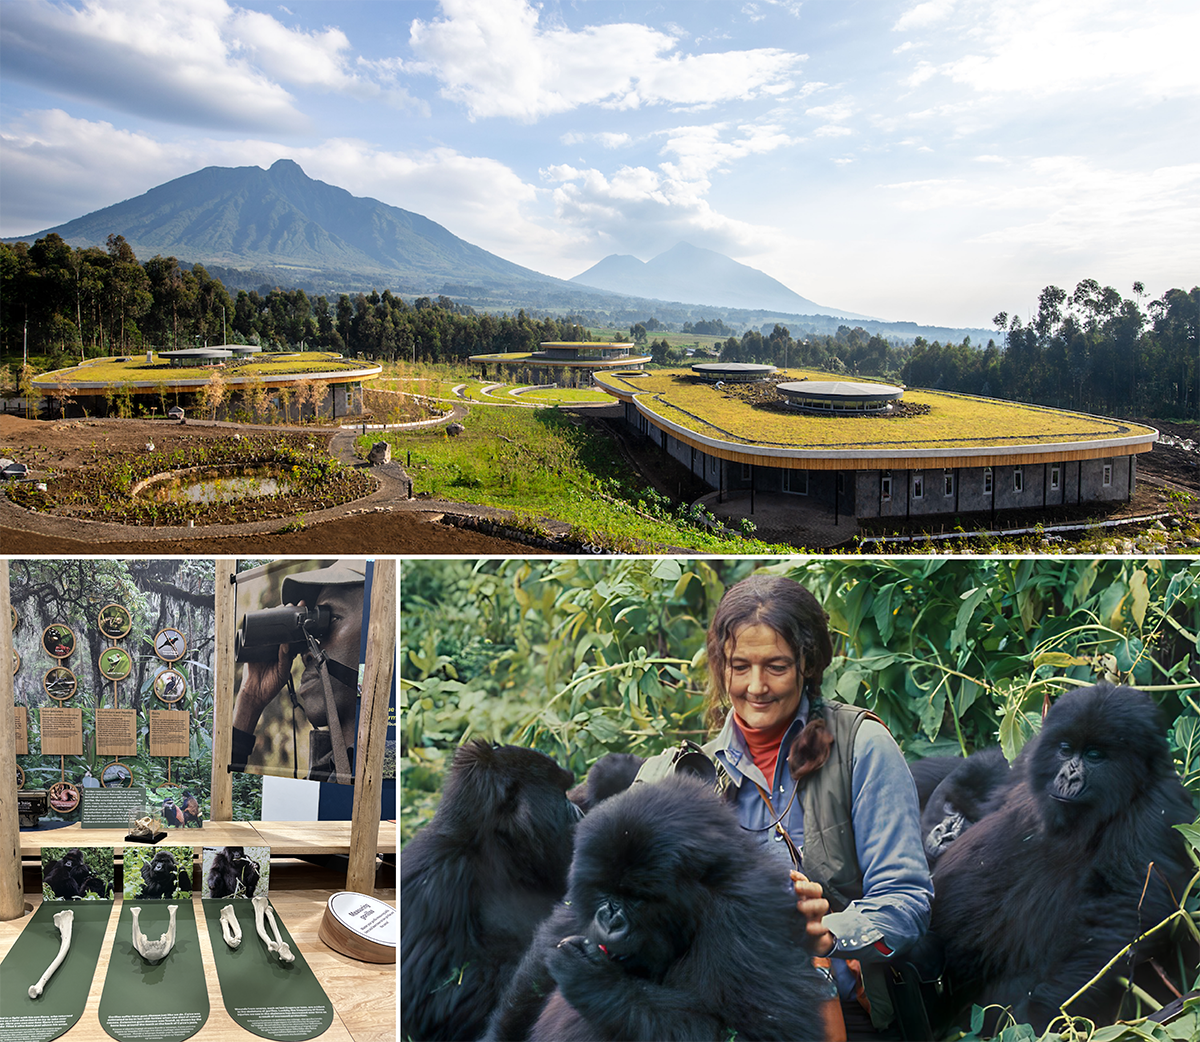 Dian Fossey Gorilla Center